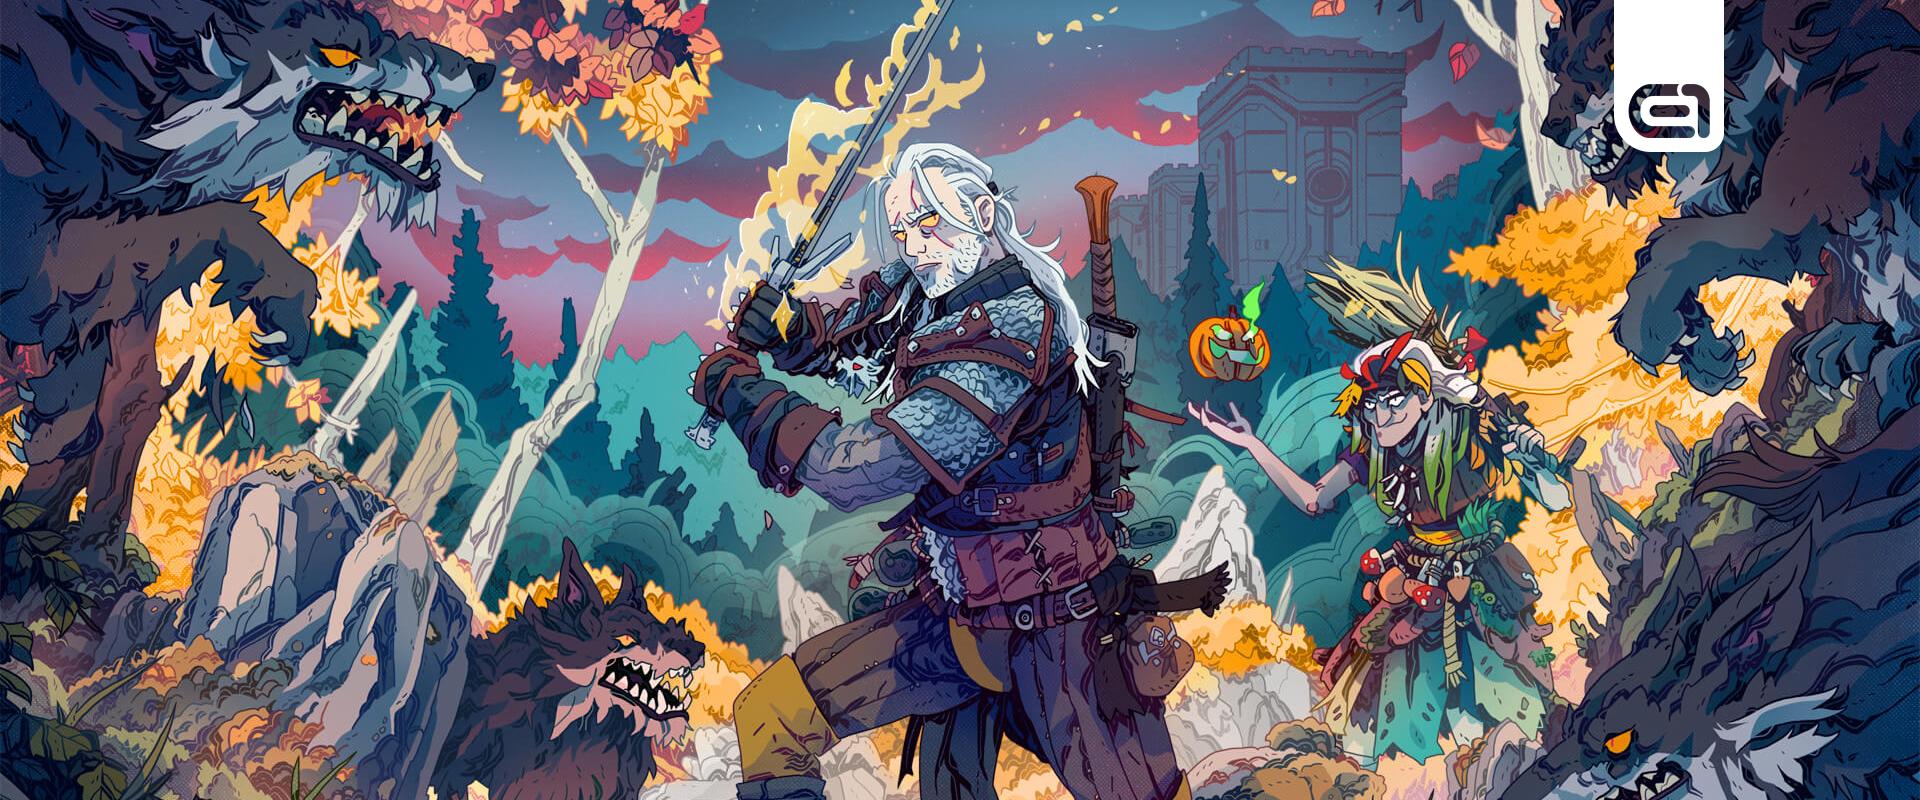 Fortnite: A Witcher rajongók örülhetnek, megérkezett Geralt a szigetre